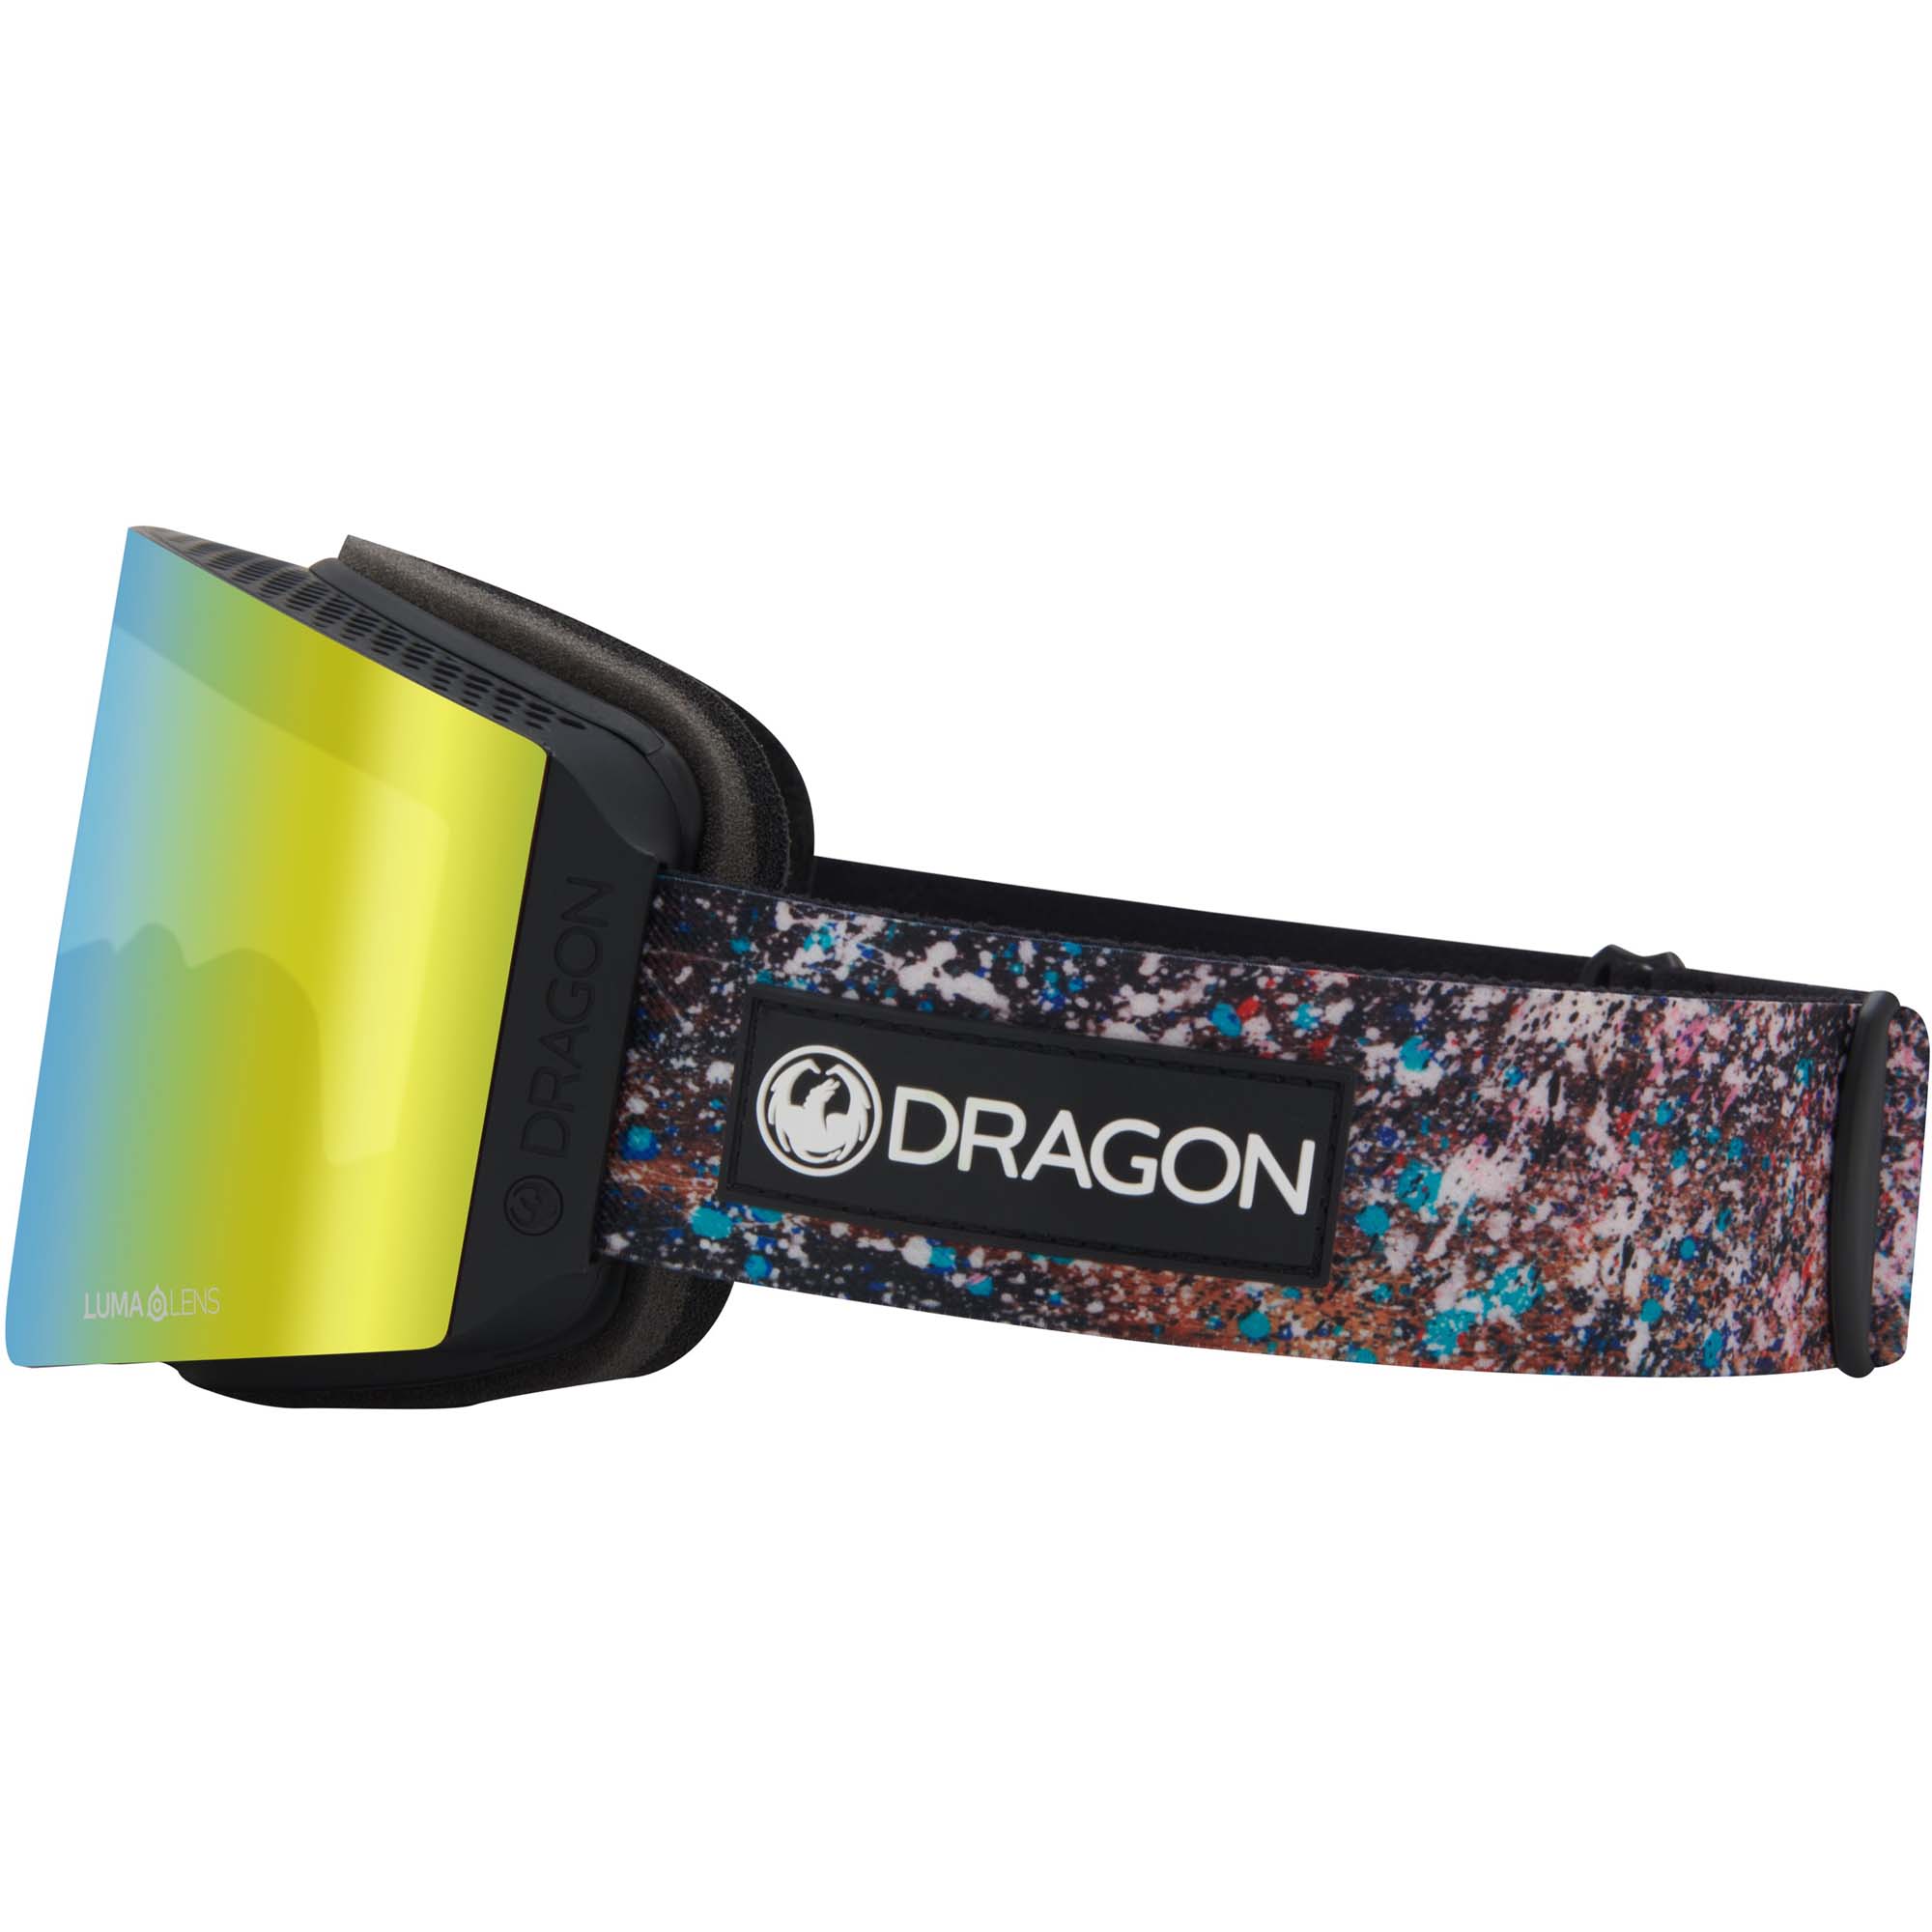 Dragon RVX MAG OTG Snowboard/Ski Goggles